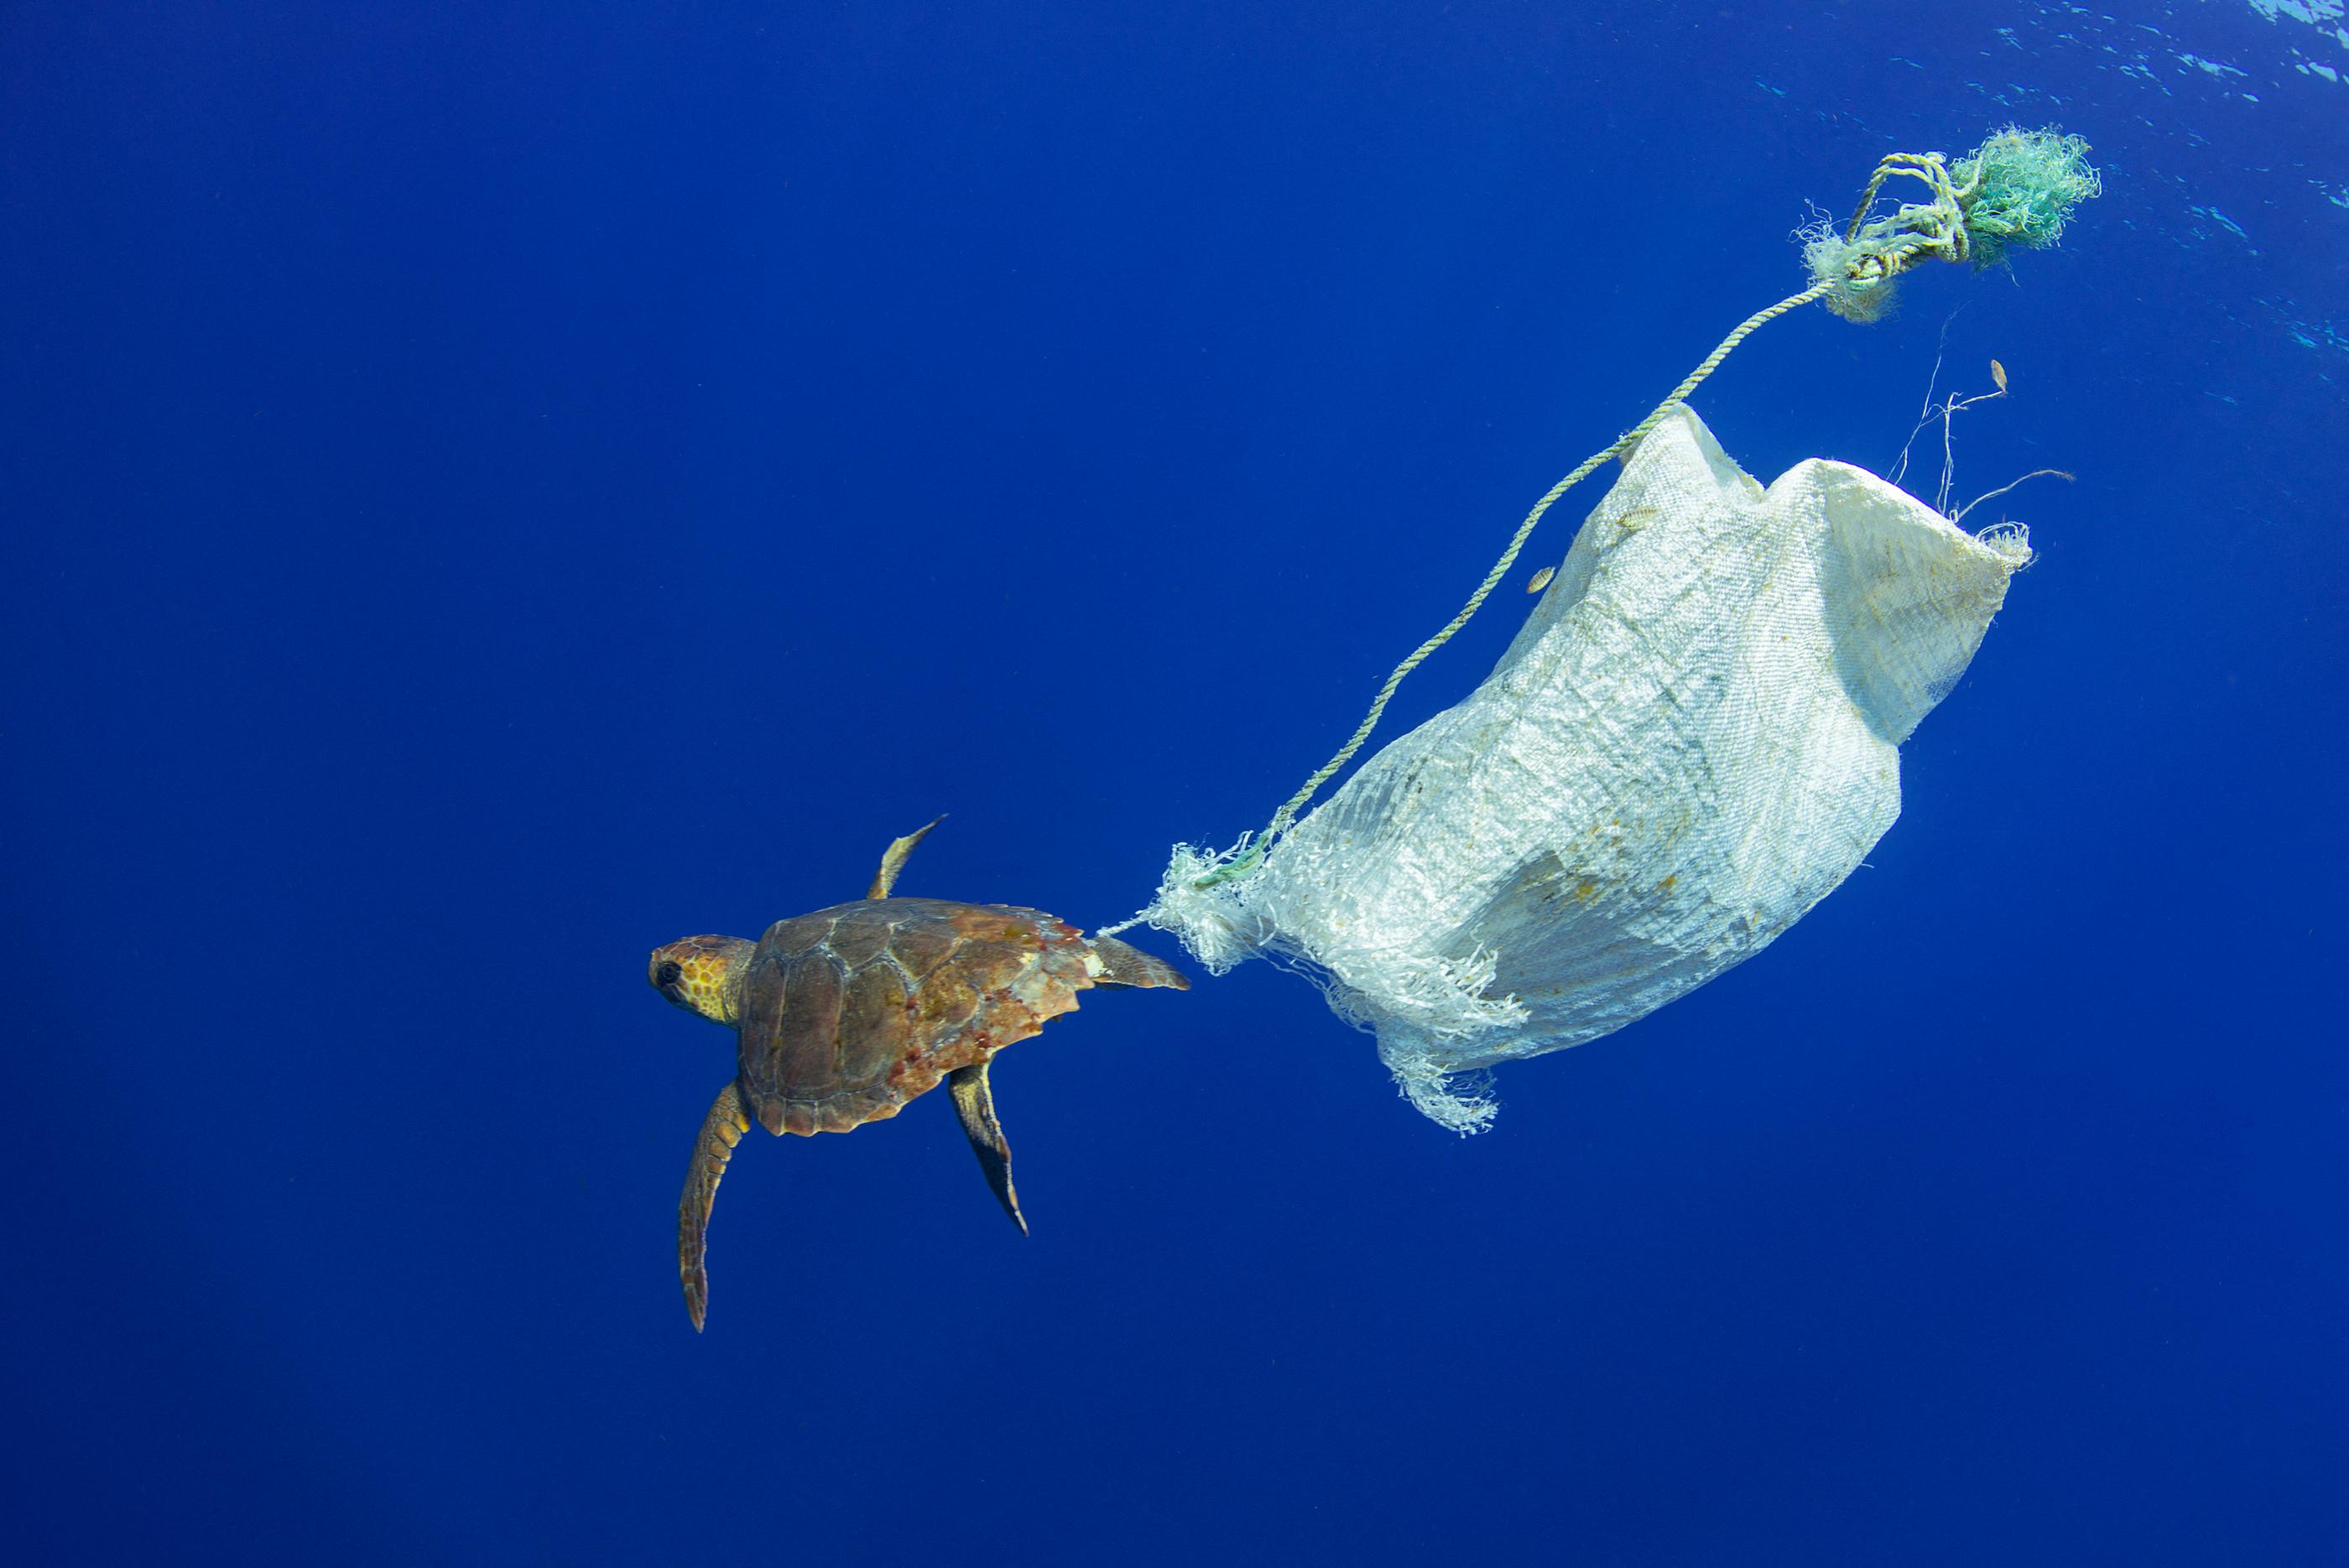 Des scientifiques ont calculé qu'entre 470 à 540 milliers de tonnes de débris finissent dans les océans chaque année. AFP/Biosphoto/Sergio Hanquet